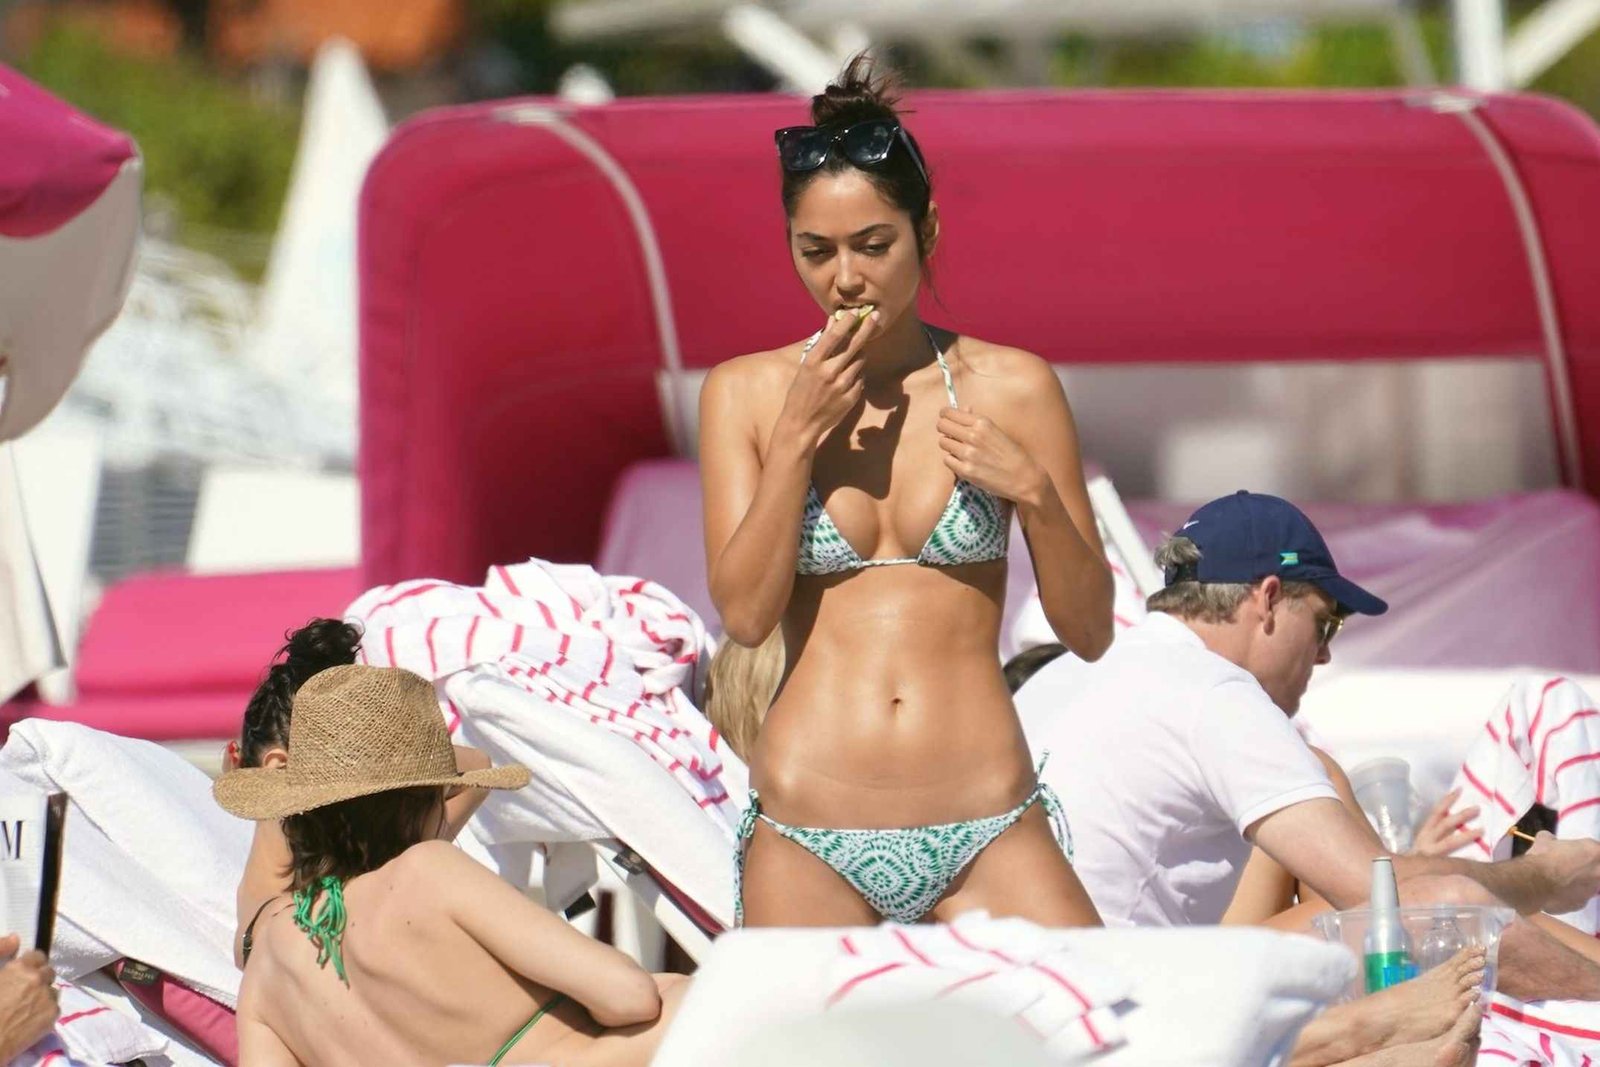 Ambra Gutierez en bikini à Miami